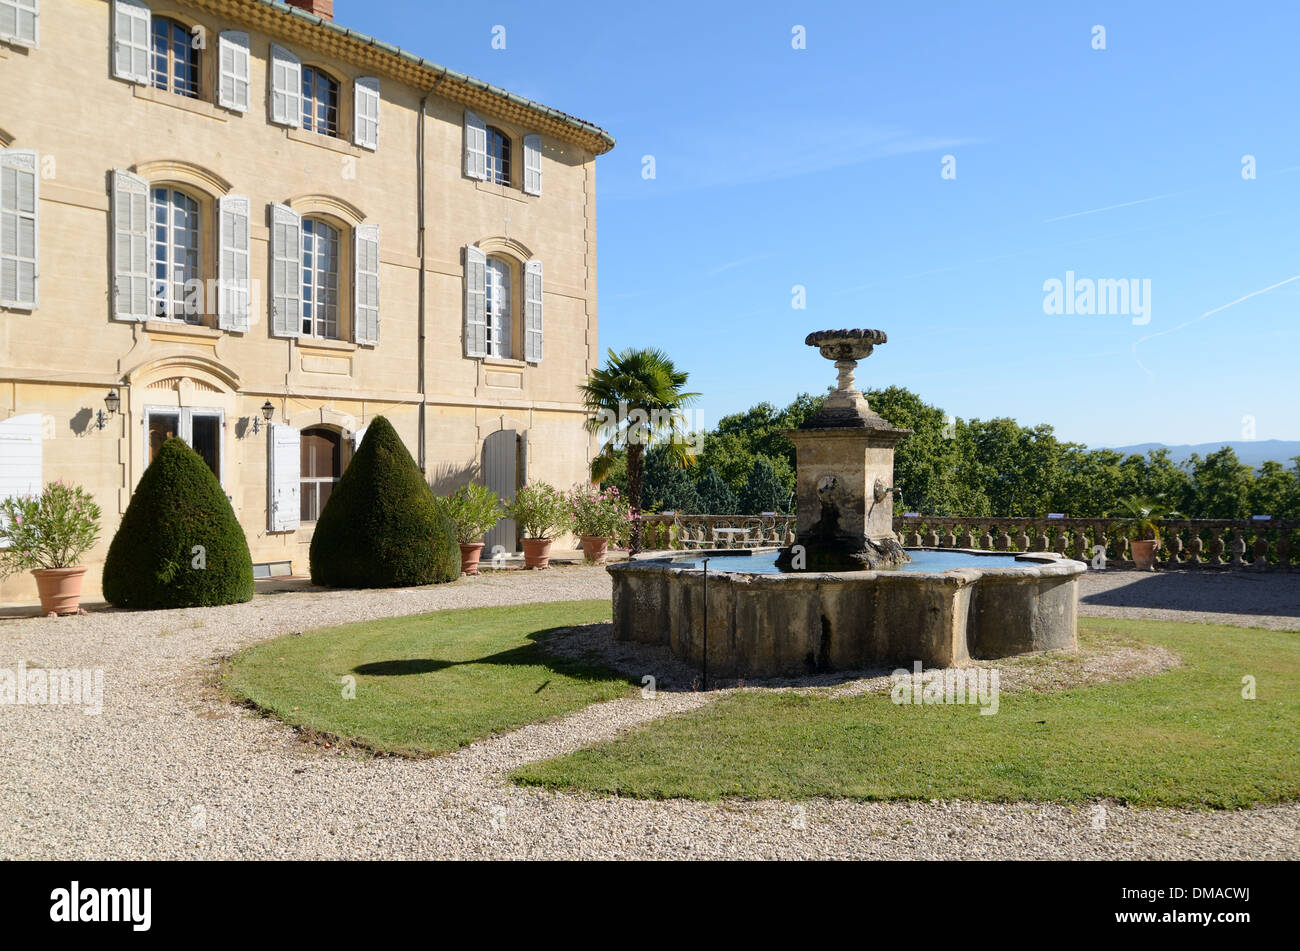 Château d'Arnajon Bastide, maison de campagne et fontaine dans le jardin avant le Puy-Sainte-Réparade Provence France Banque D'Images